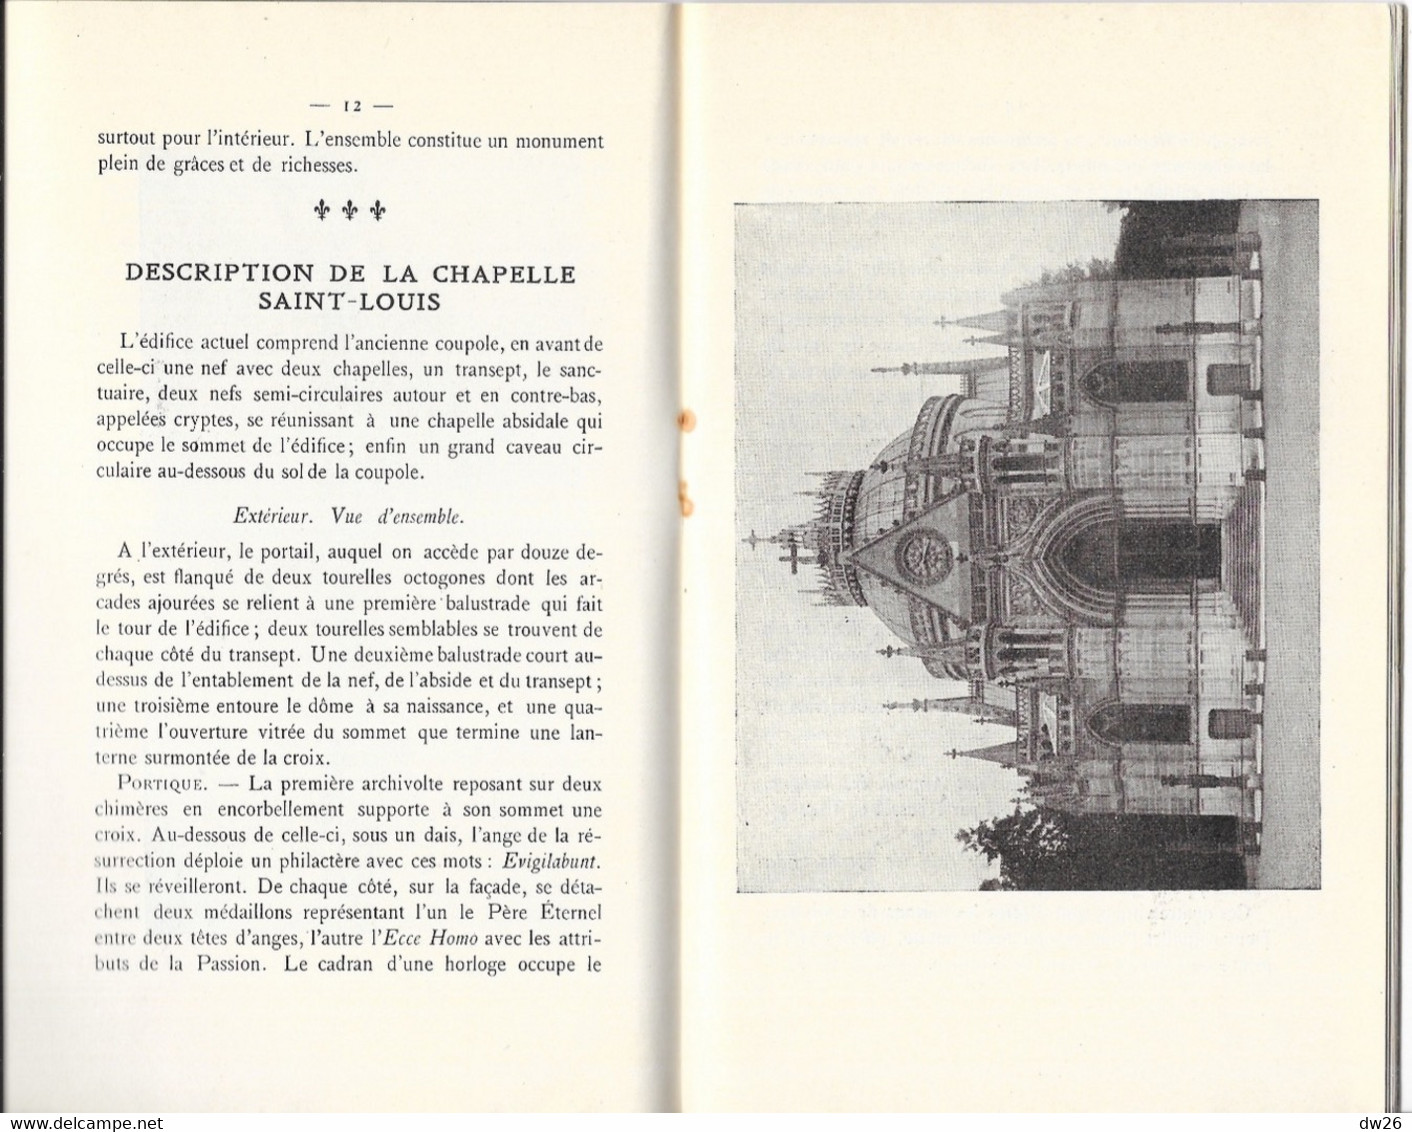 Dreux - Livret: Chapelle Royale Saint-Louis Et Autres Monuments - Origine, Histoire Par Le Chanoine Martin - History